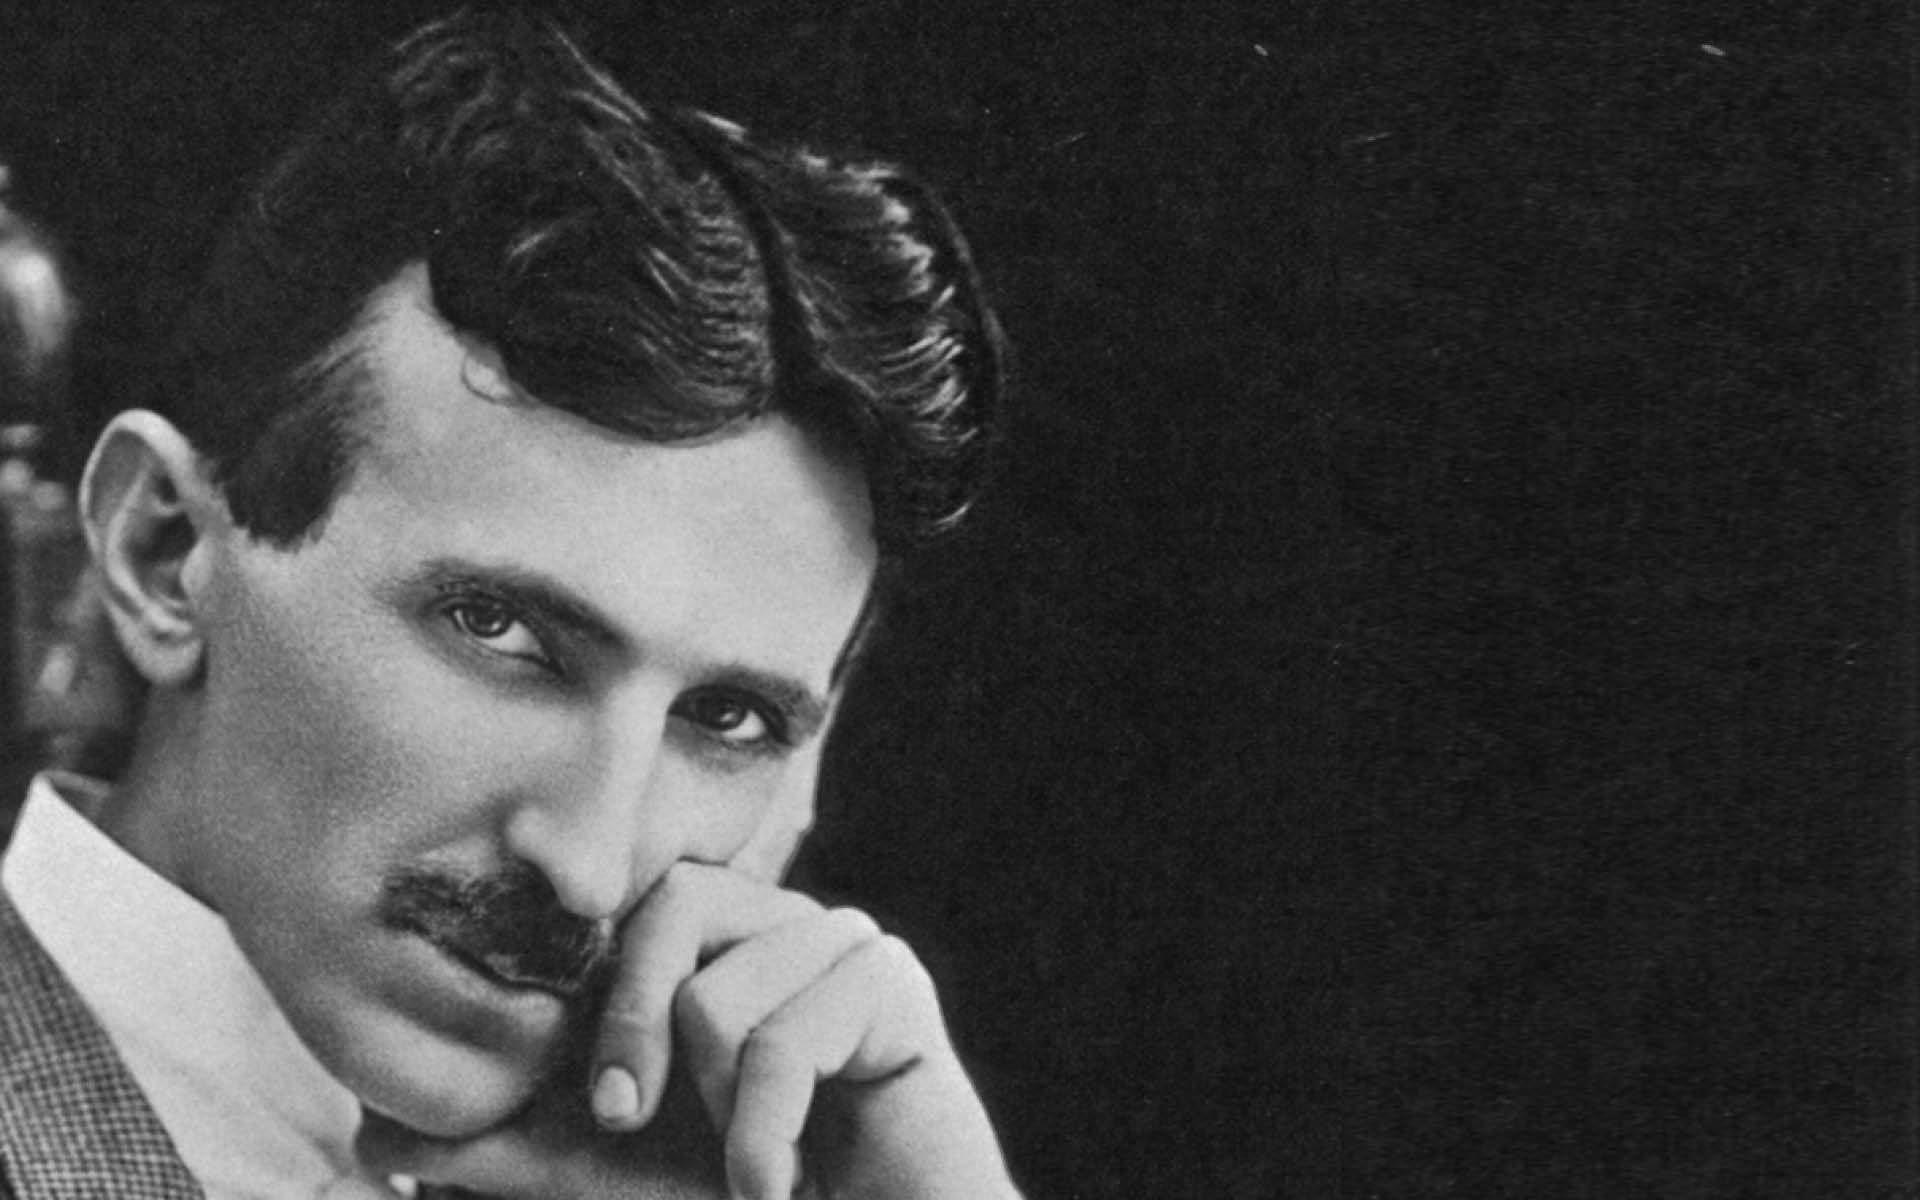 Nikola Tesla iPhone ✓ The Galleries of HD wallpaper | Pxfuel